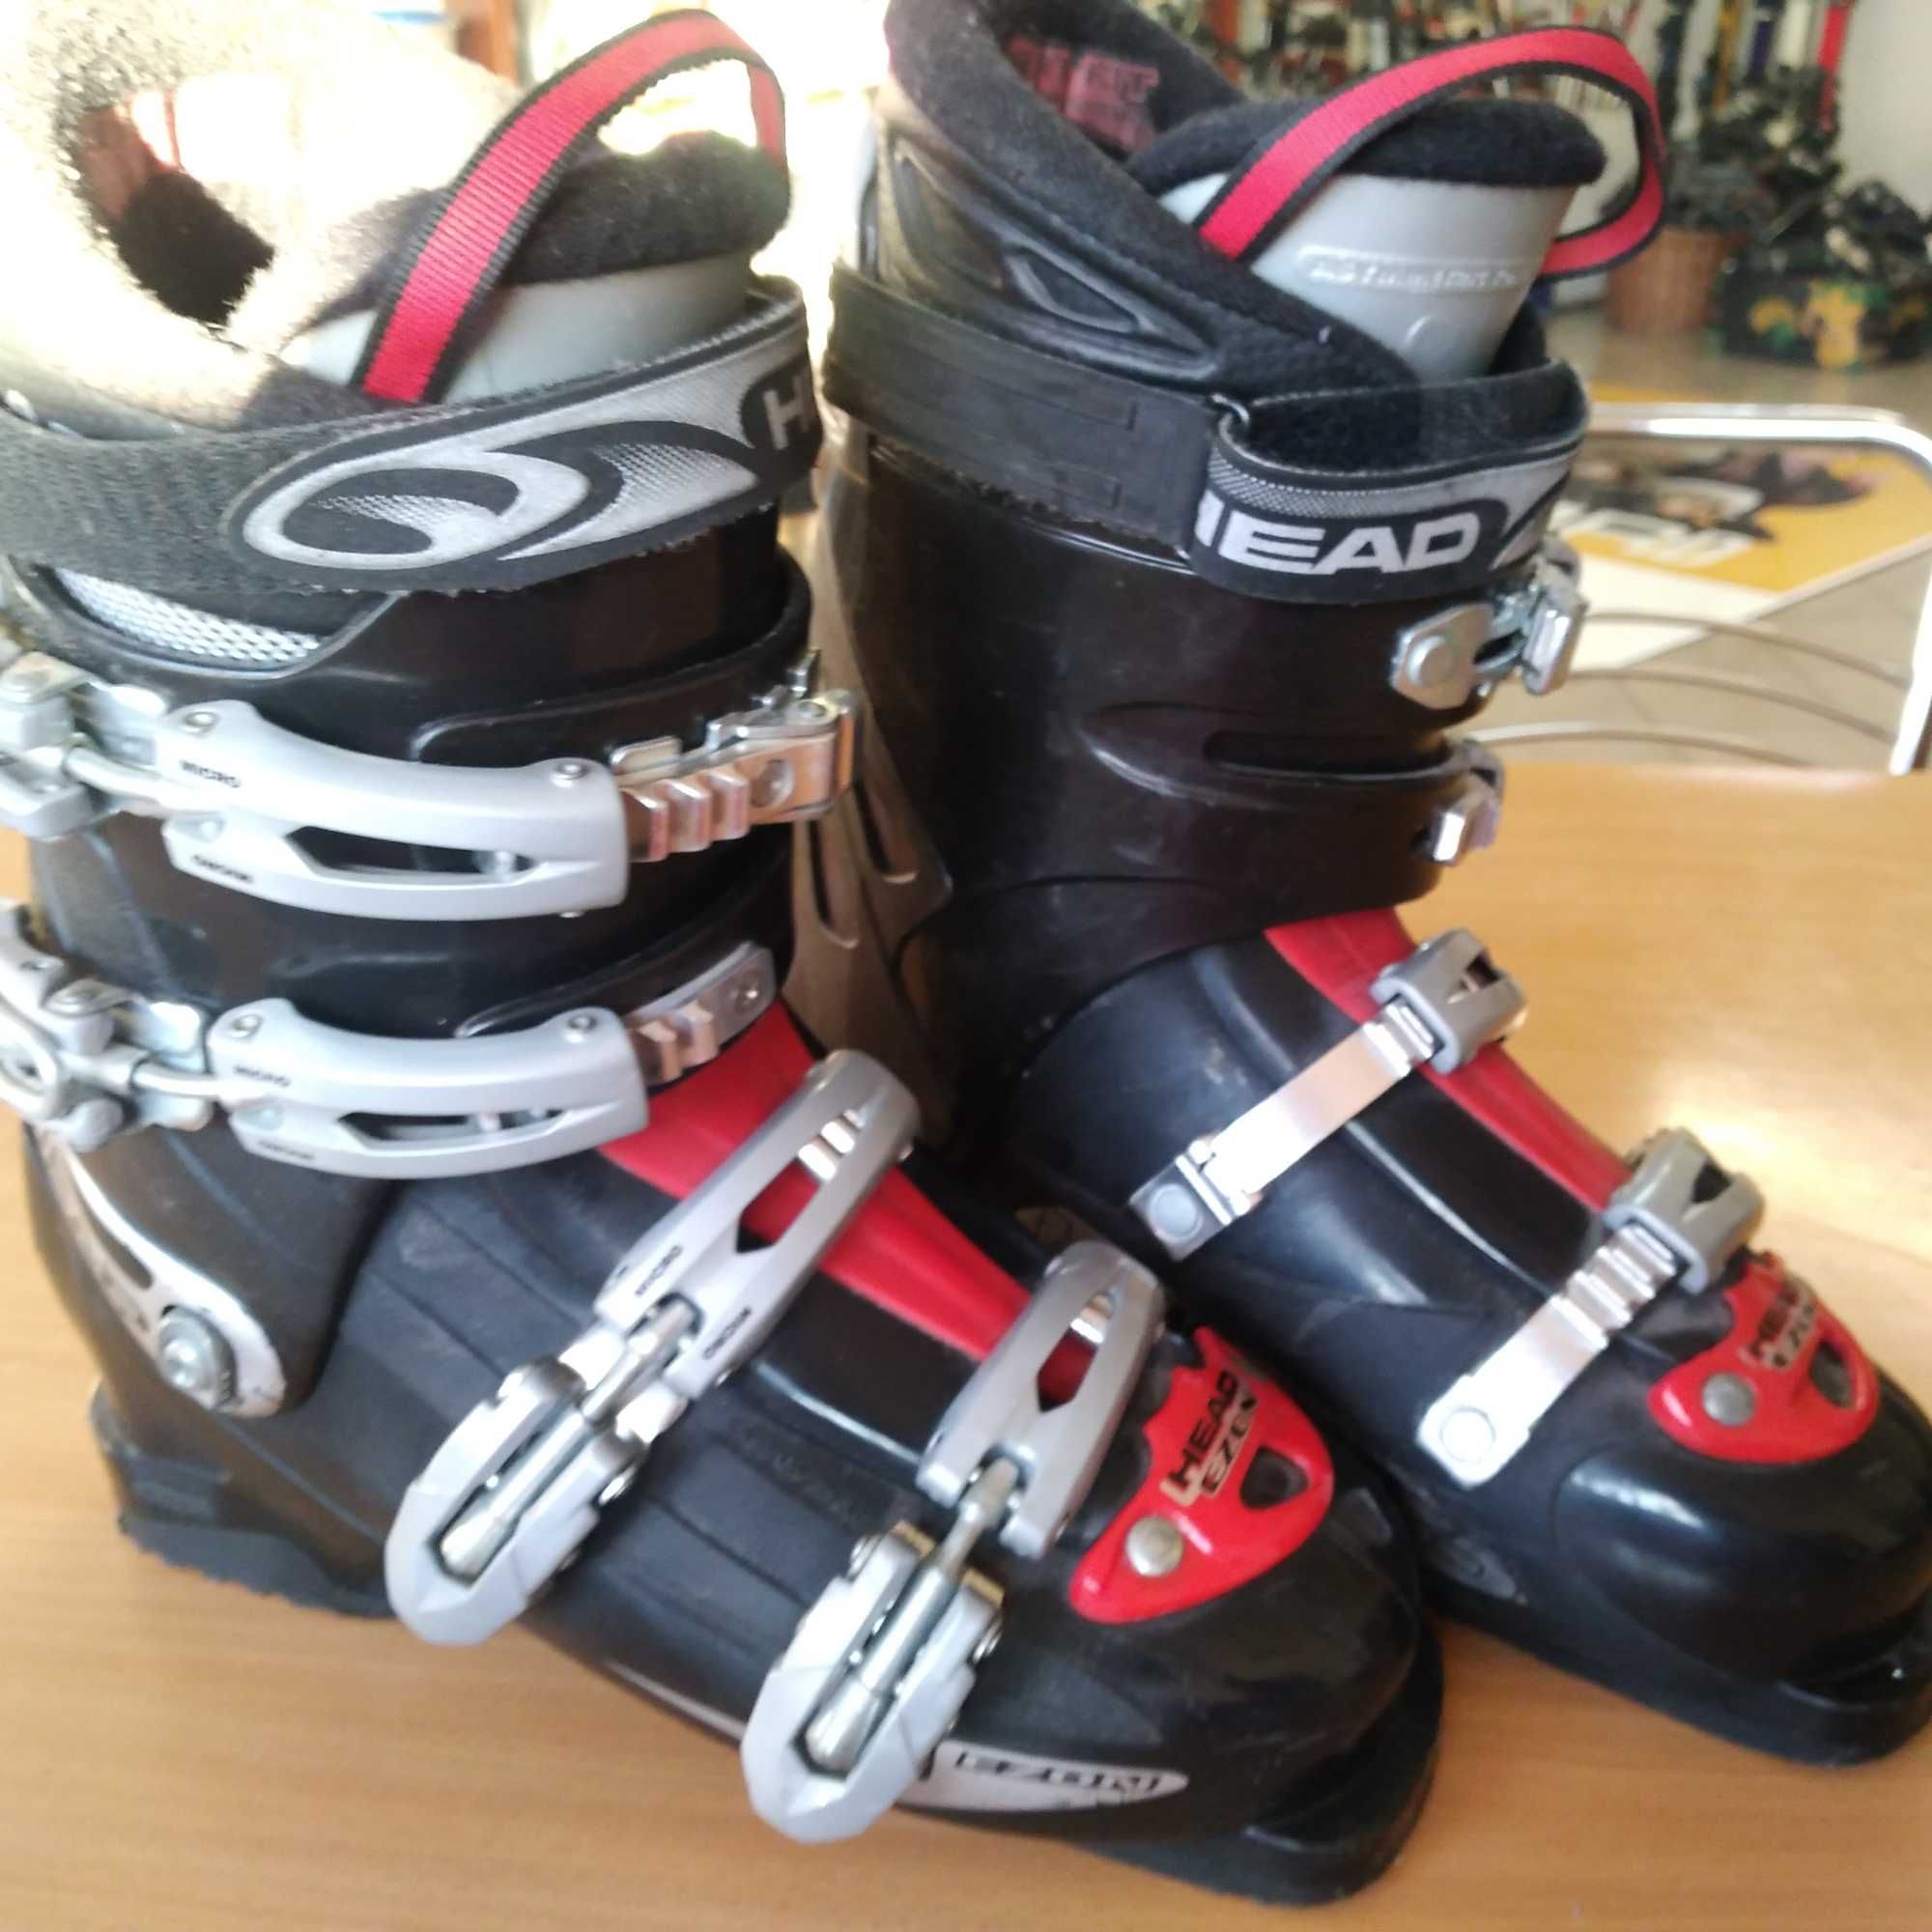 Buty narciarskie HEAD długość całkowita 30 cm  - stan dobry /